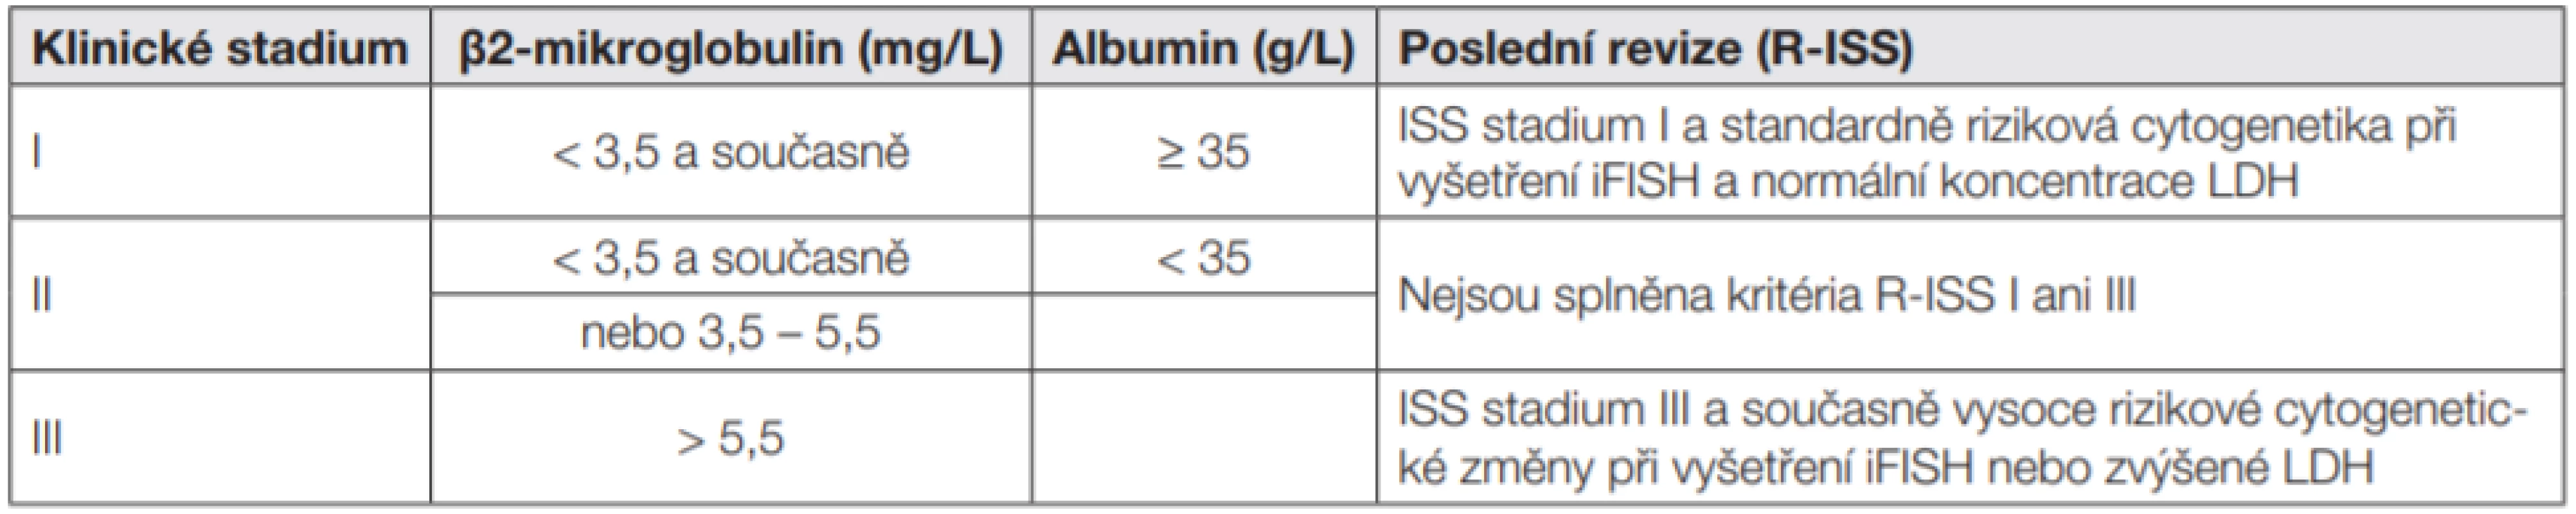 Mezinárodní prognostický index (ISS a R-ISS) pro mnohočetný myelom [5, 7]